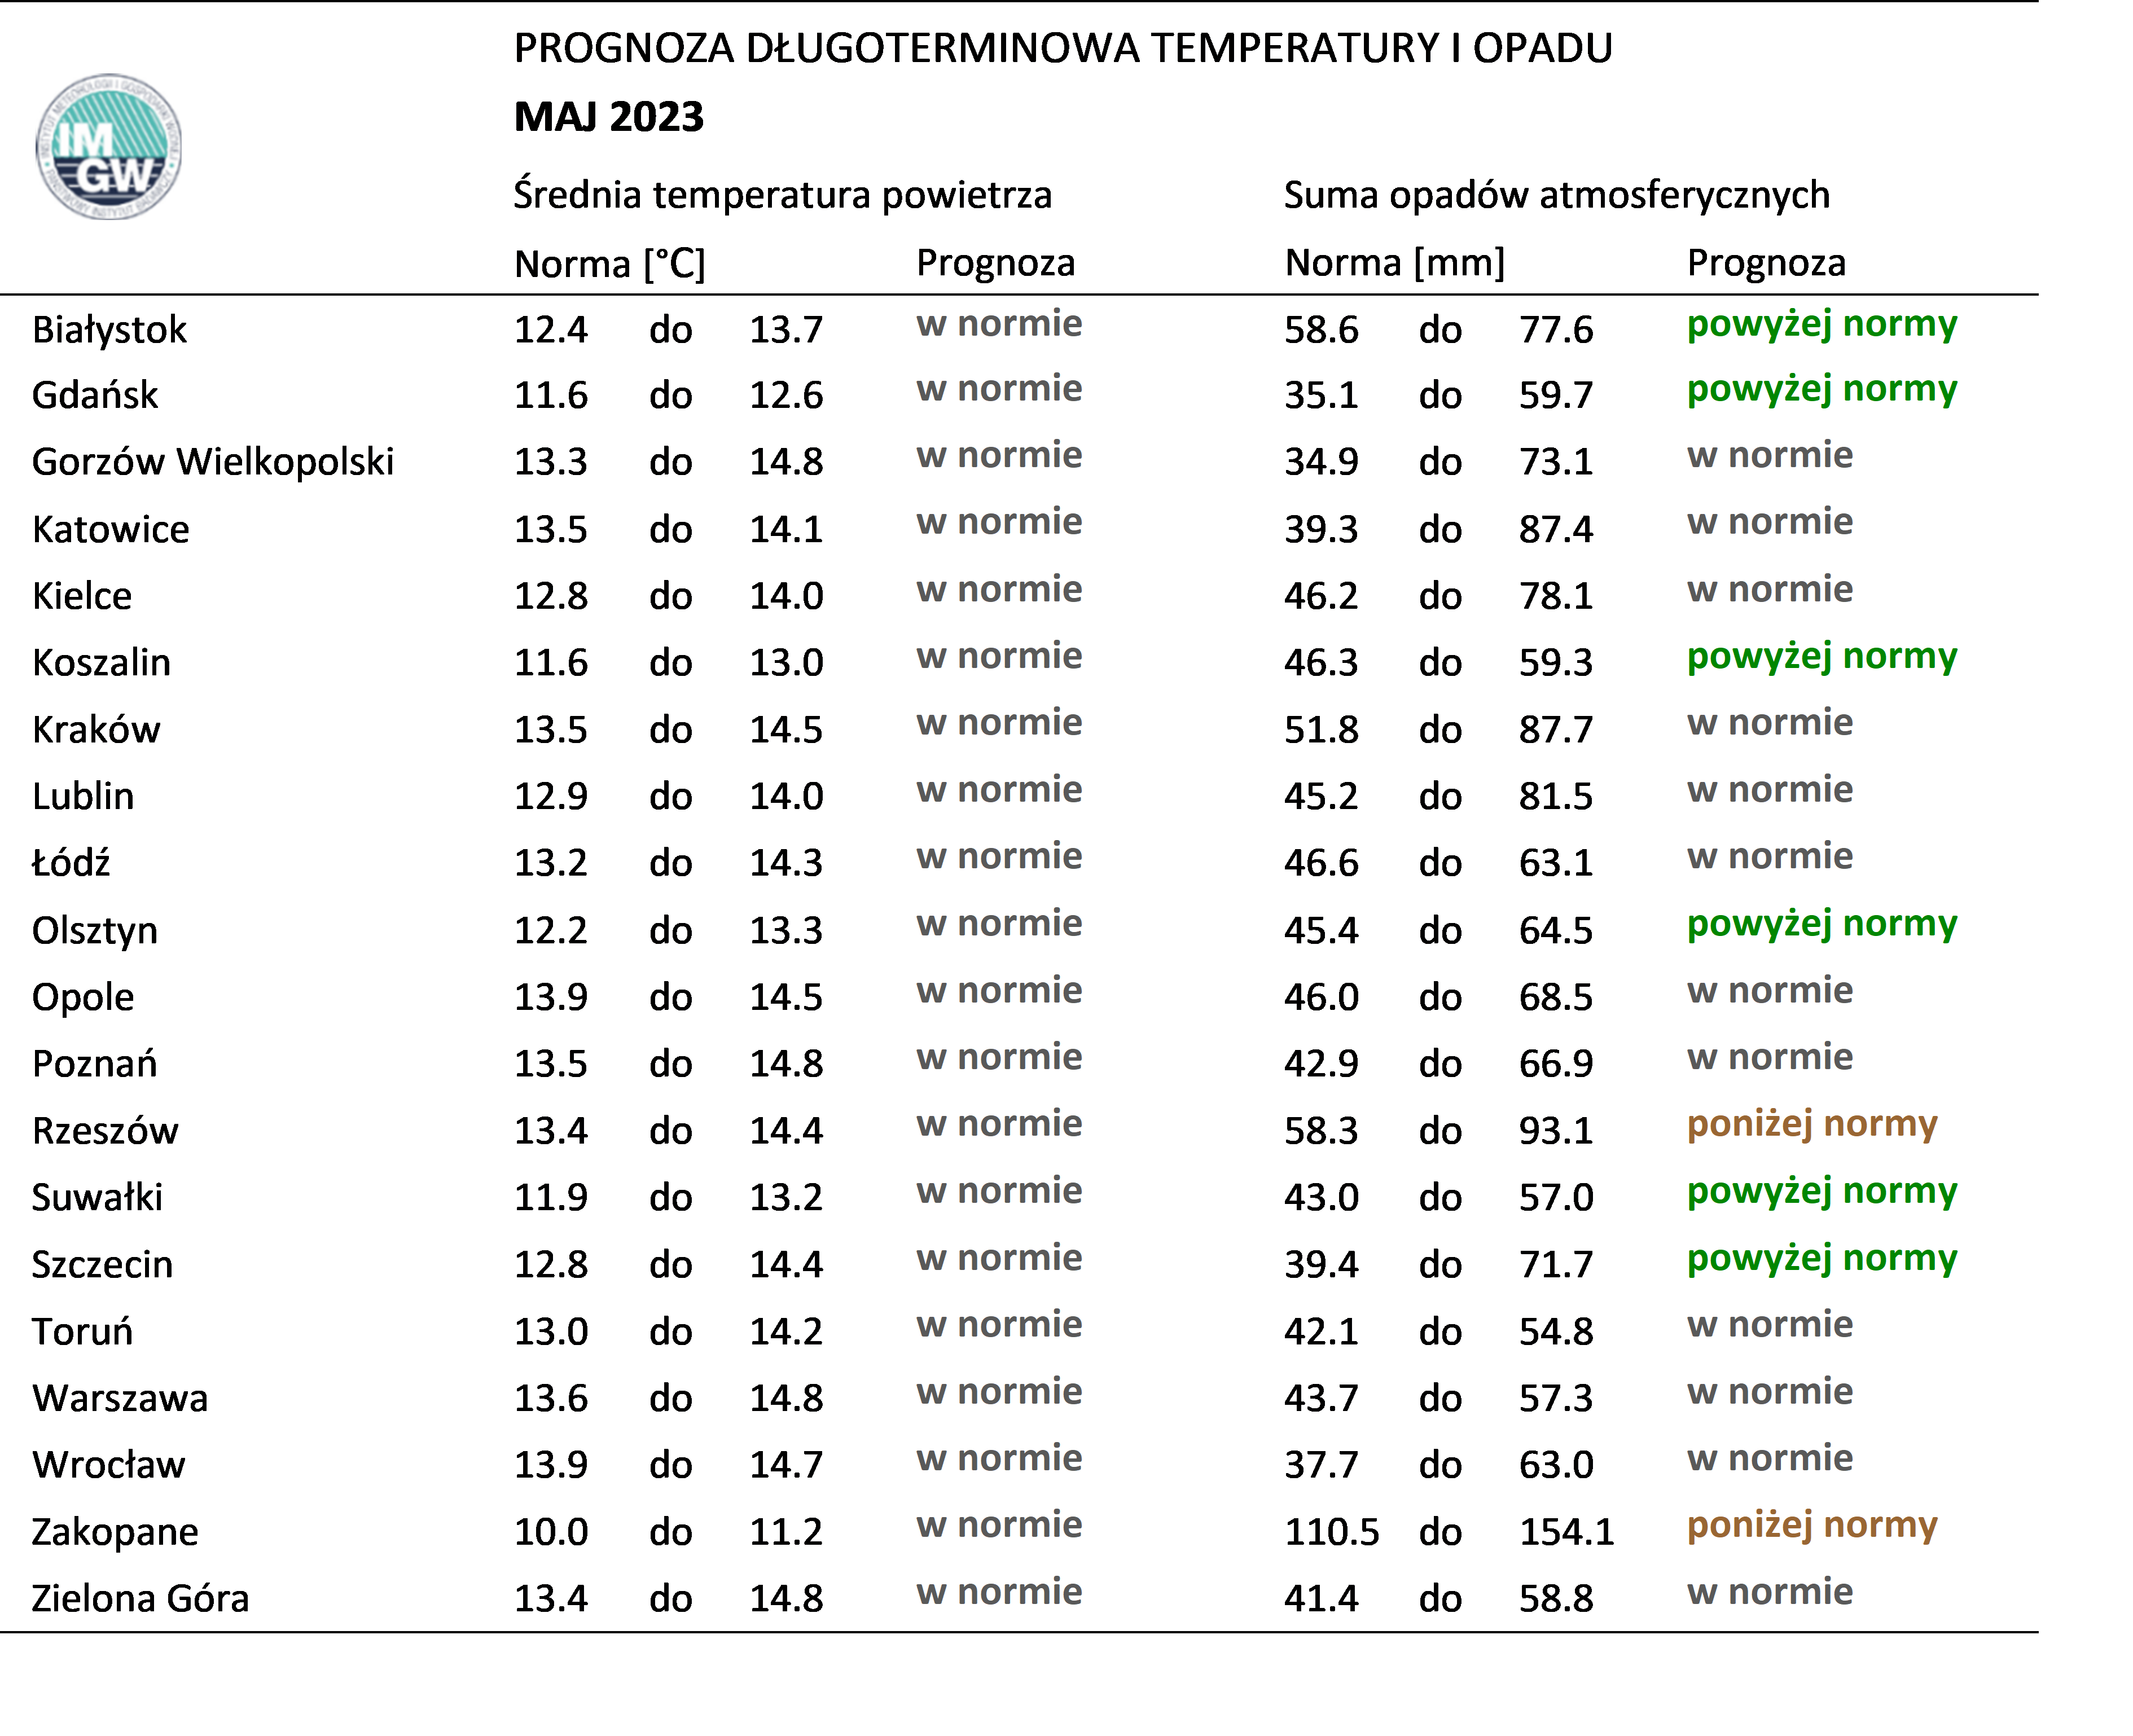 Tab. 1. Norma średniej temperatury powietrza i sumy opadów atmosferycznych dla maja z lat 1991-2020 dla wybranych miast w Polsce wraz z prognozą na maj 2023 r.